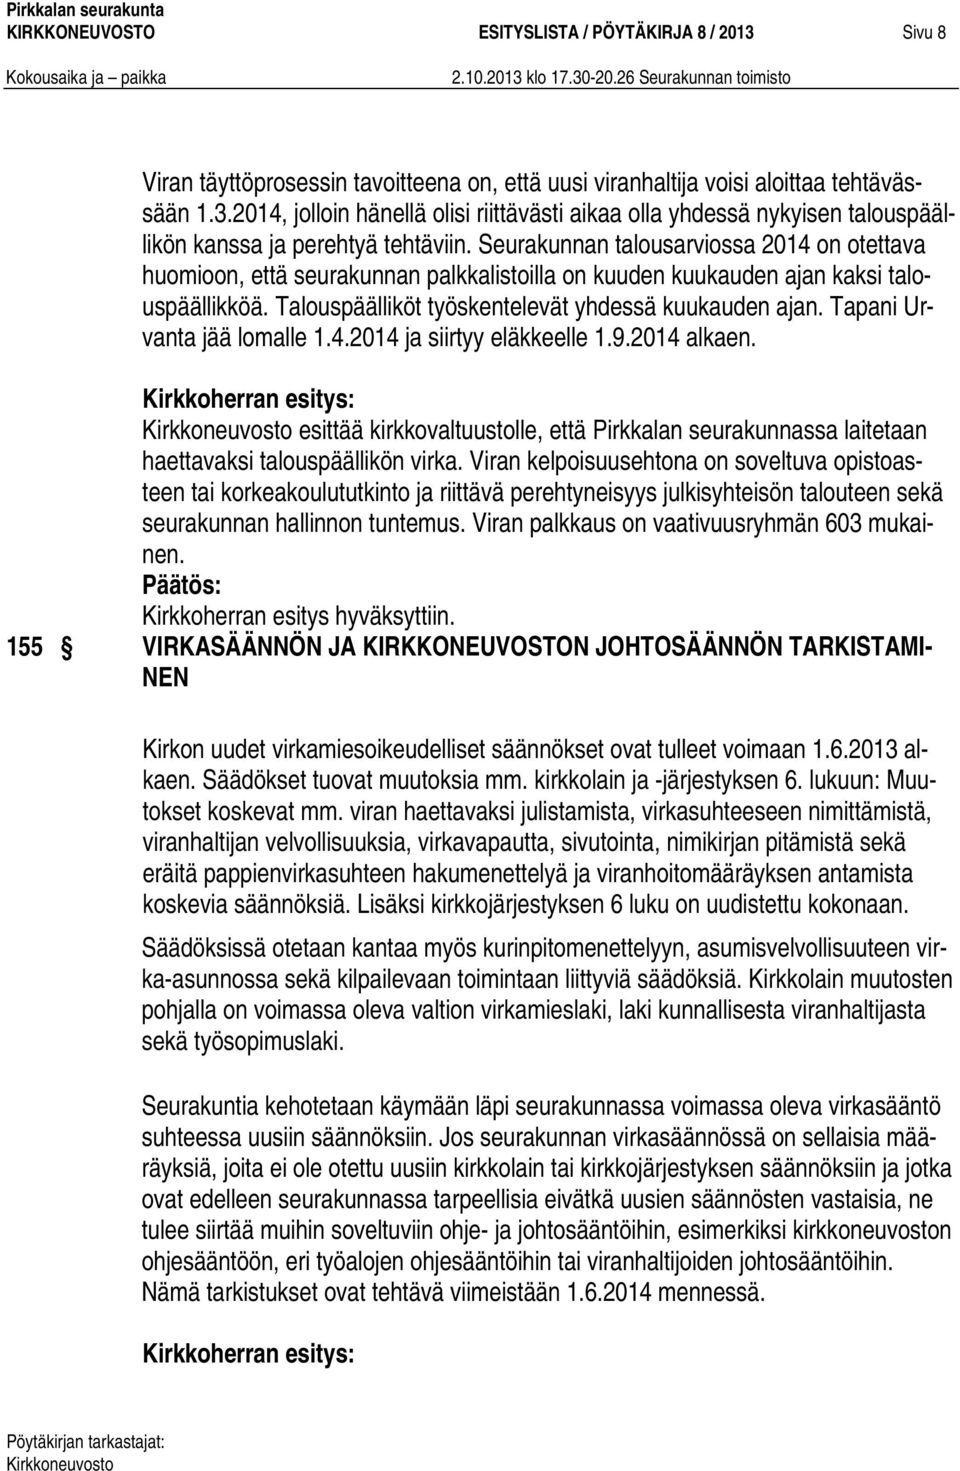 Tapani Urvanta jää lomalle 1.4.2014 ja siirtyy eläkkeelle 1.9.2014 alkaen. Kirkkoherran esitys: esittää kirkkovaltuustolle, että Pirkkalan seurakunnassa laitetaan haettavaksi talouspäällikön virka.